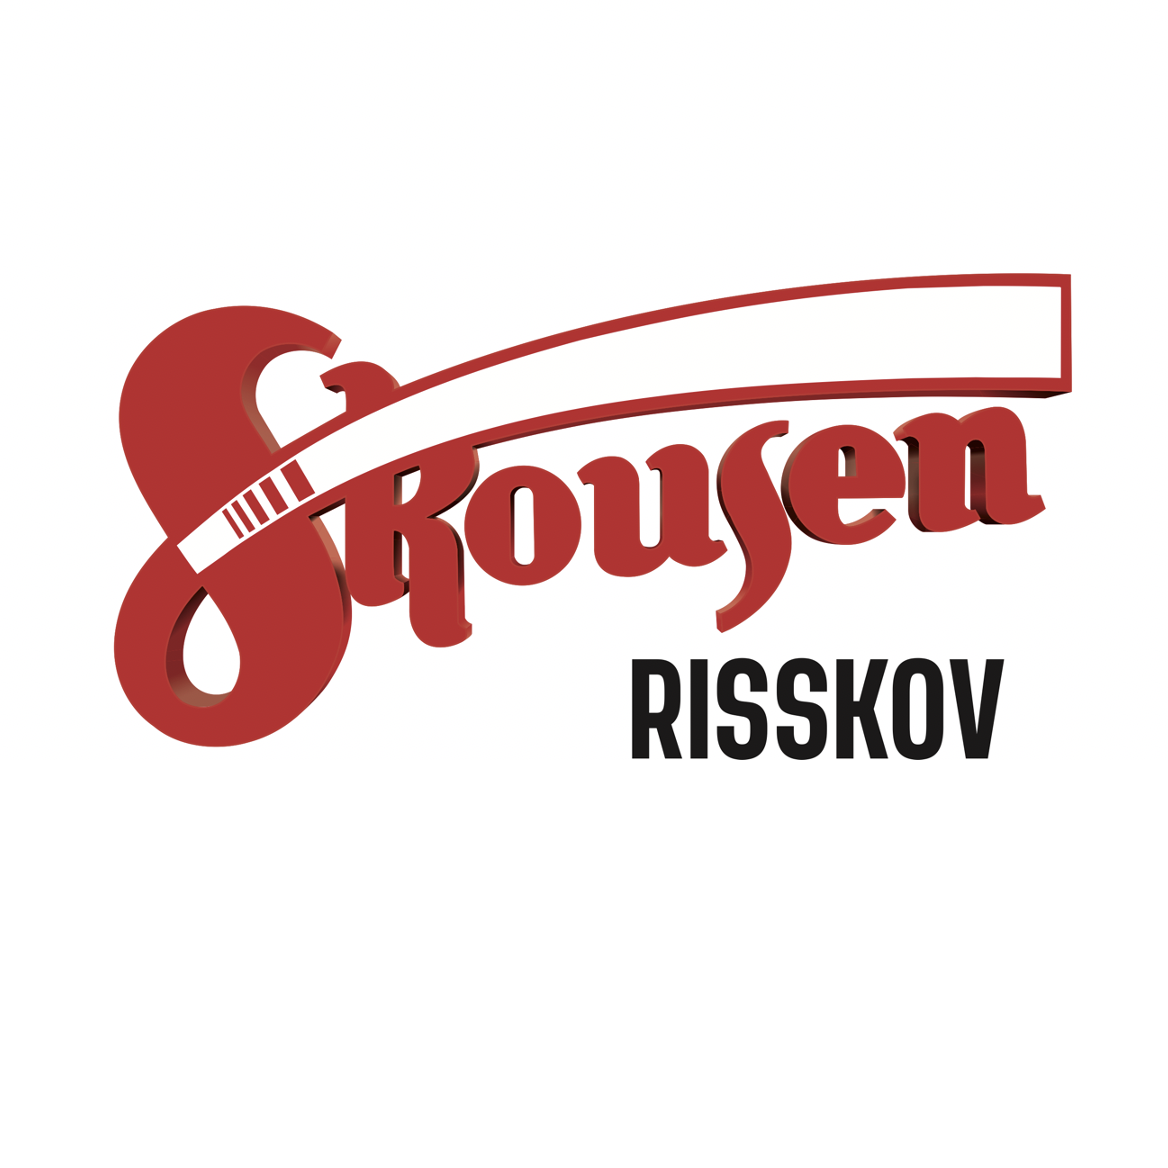 Skousen Risskov